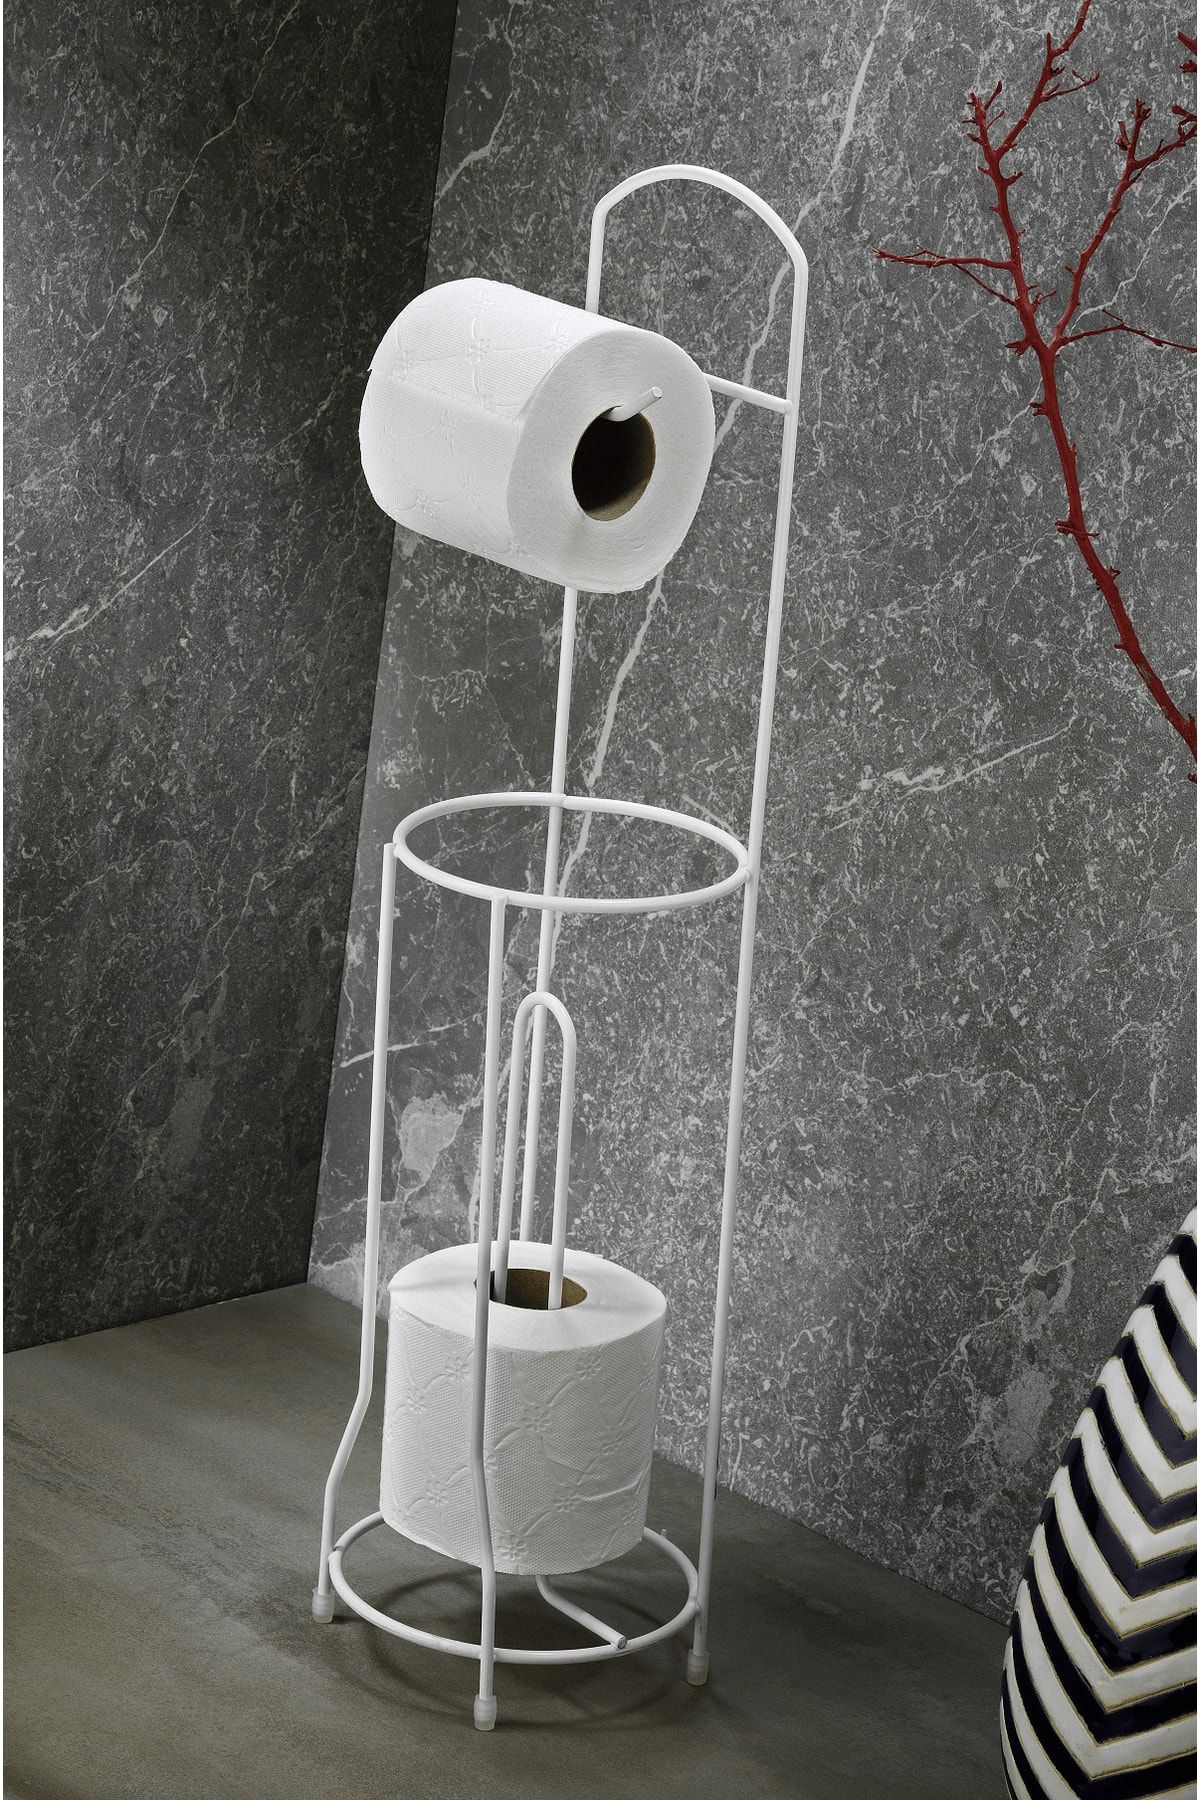 Sas Haus Ömür Boyu Paslanmaz Ayaklı Wc Kağıtlı Yedek Kağıt Hazneli Tuvalet Kağıtlığı Yuvarlak Beyaz